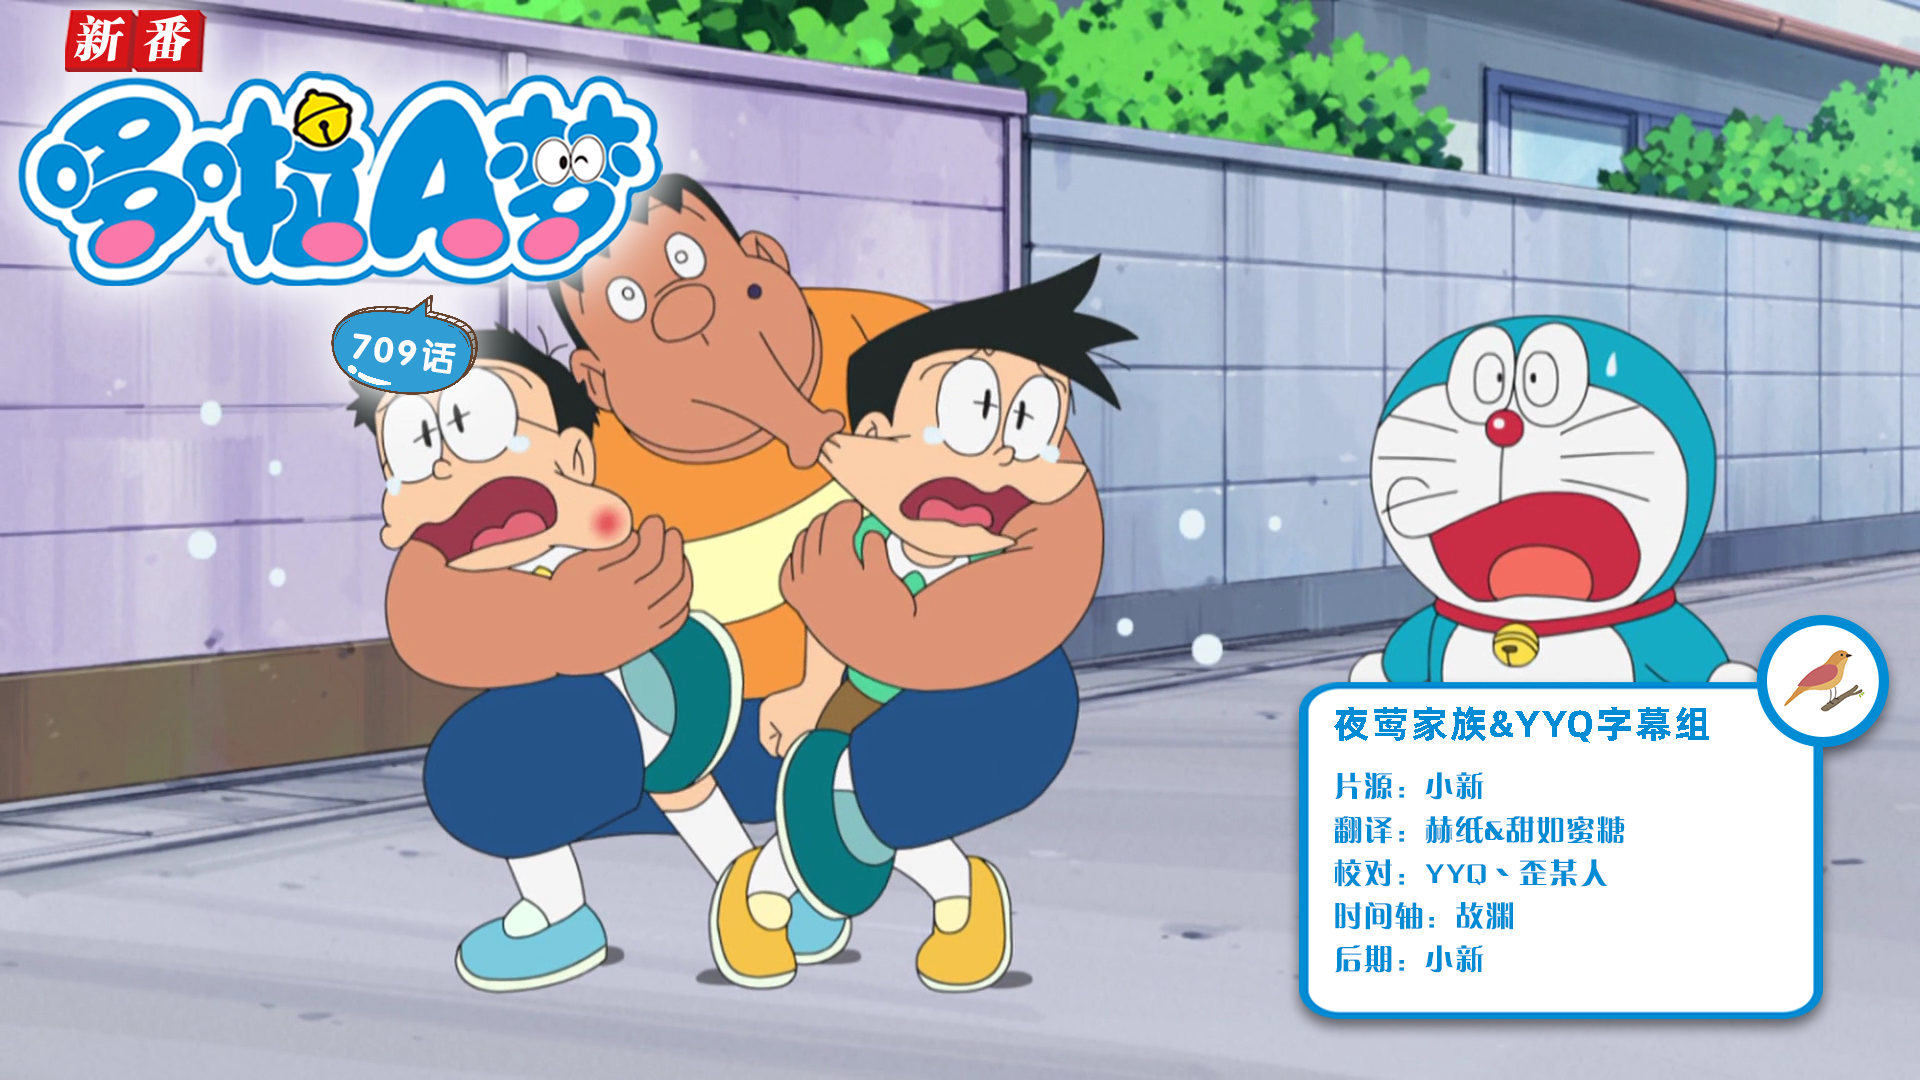 [夜莺家族&YYQ字幕组]New Doraemon 哆啦A梦新番[709][2022.06.04][AVC][1080P][GB_JP]插图icecomic动漫-云之彼端,约定的地方(´･ᴗ･`)2